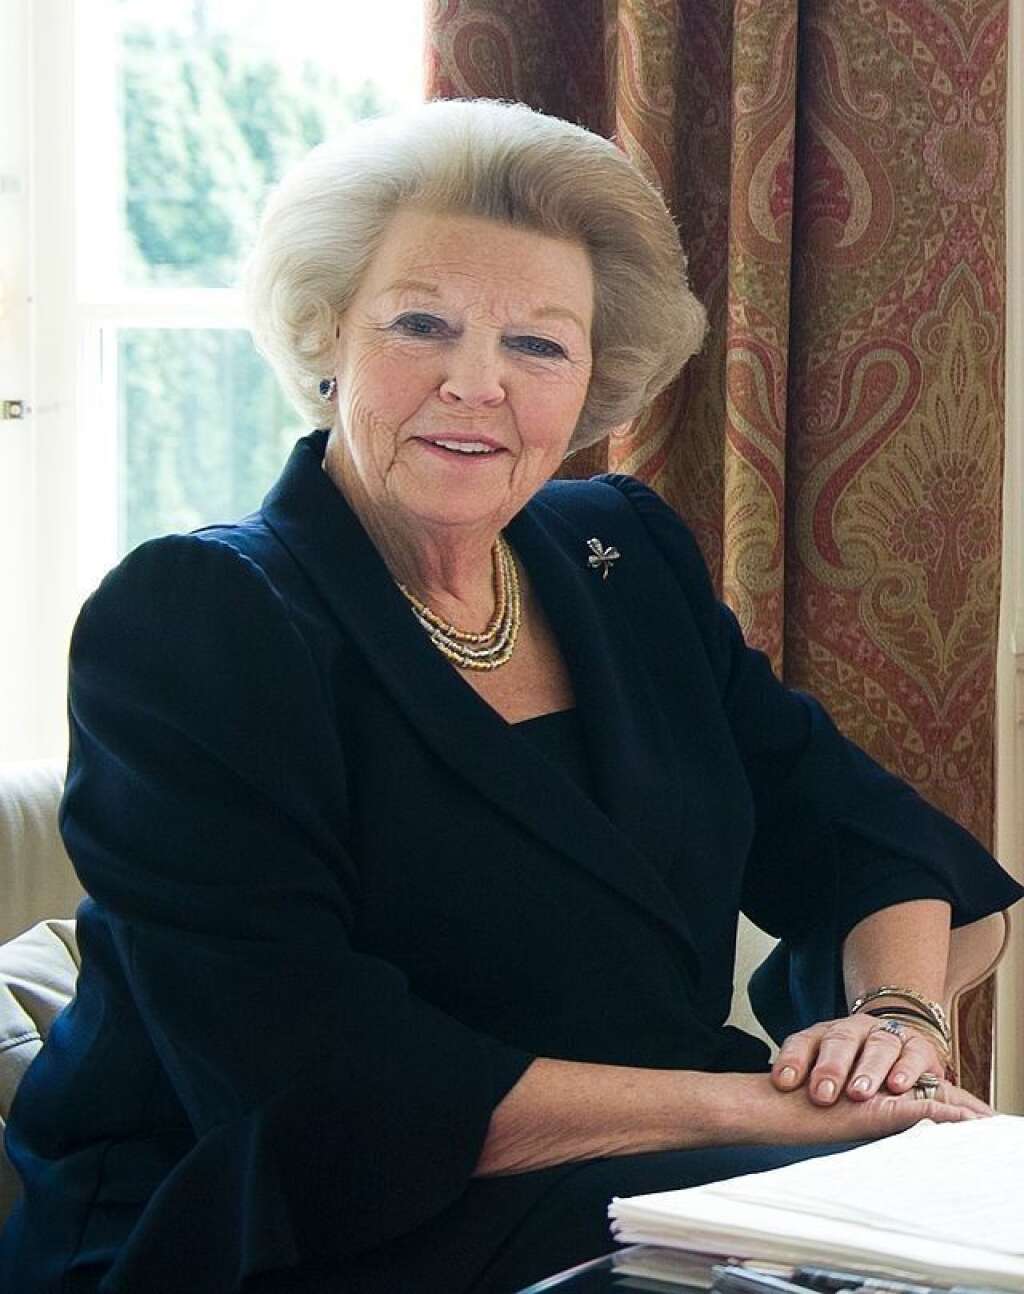 Beatrix - L'abdication en 2013 de la reine Beatrix des Pays-Bas le 30 avril 2013, à l'âge de 75 ans, en faveur de son fils Willem-Alexander, intervient après 33 ans de règne. Déjà, la reine Juliana avait abdiqué le 30 avril 1980, jour de son 71e anniversaire, en faveur de Beatrix, sa fille aînée. Juliana avait été intronisée en septembre 1948, au surlendemain de l'abdication de sa mère, la reine Wilhelmine.